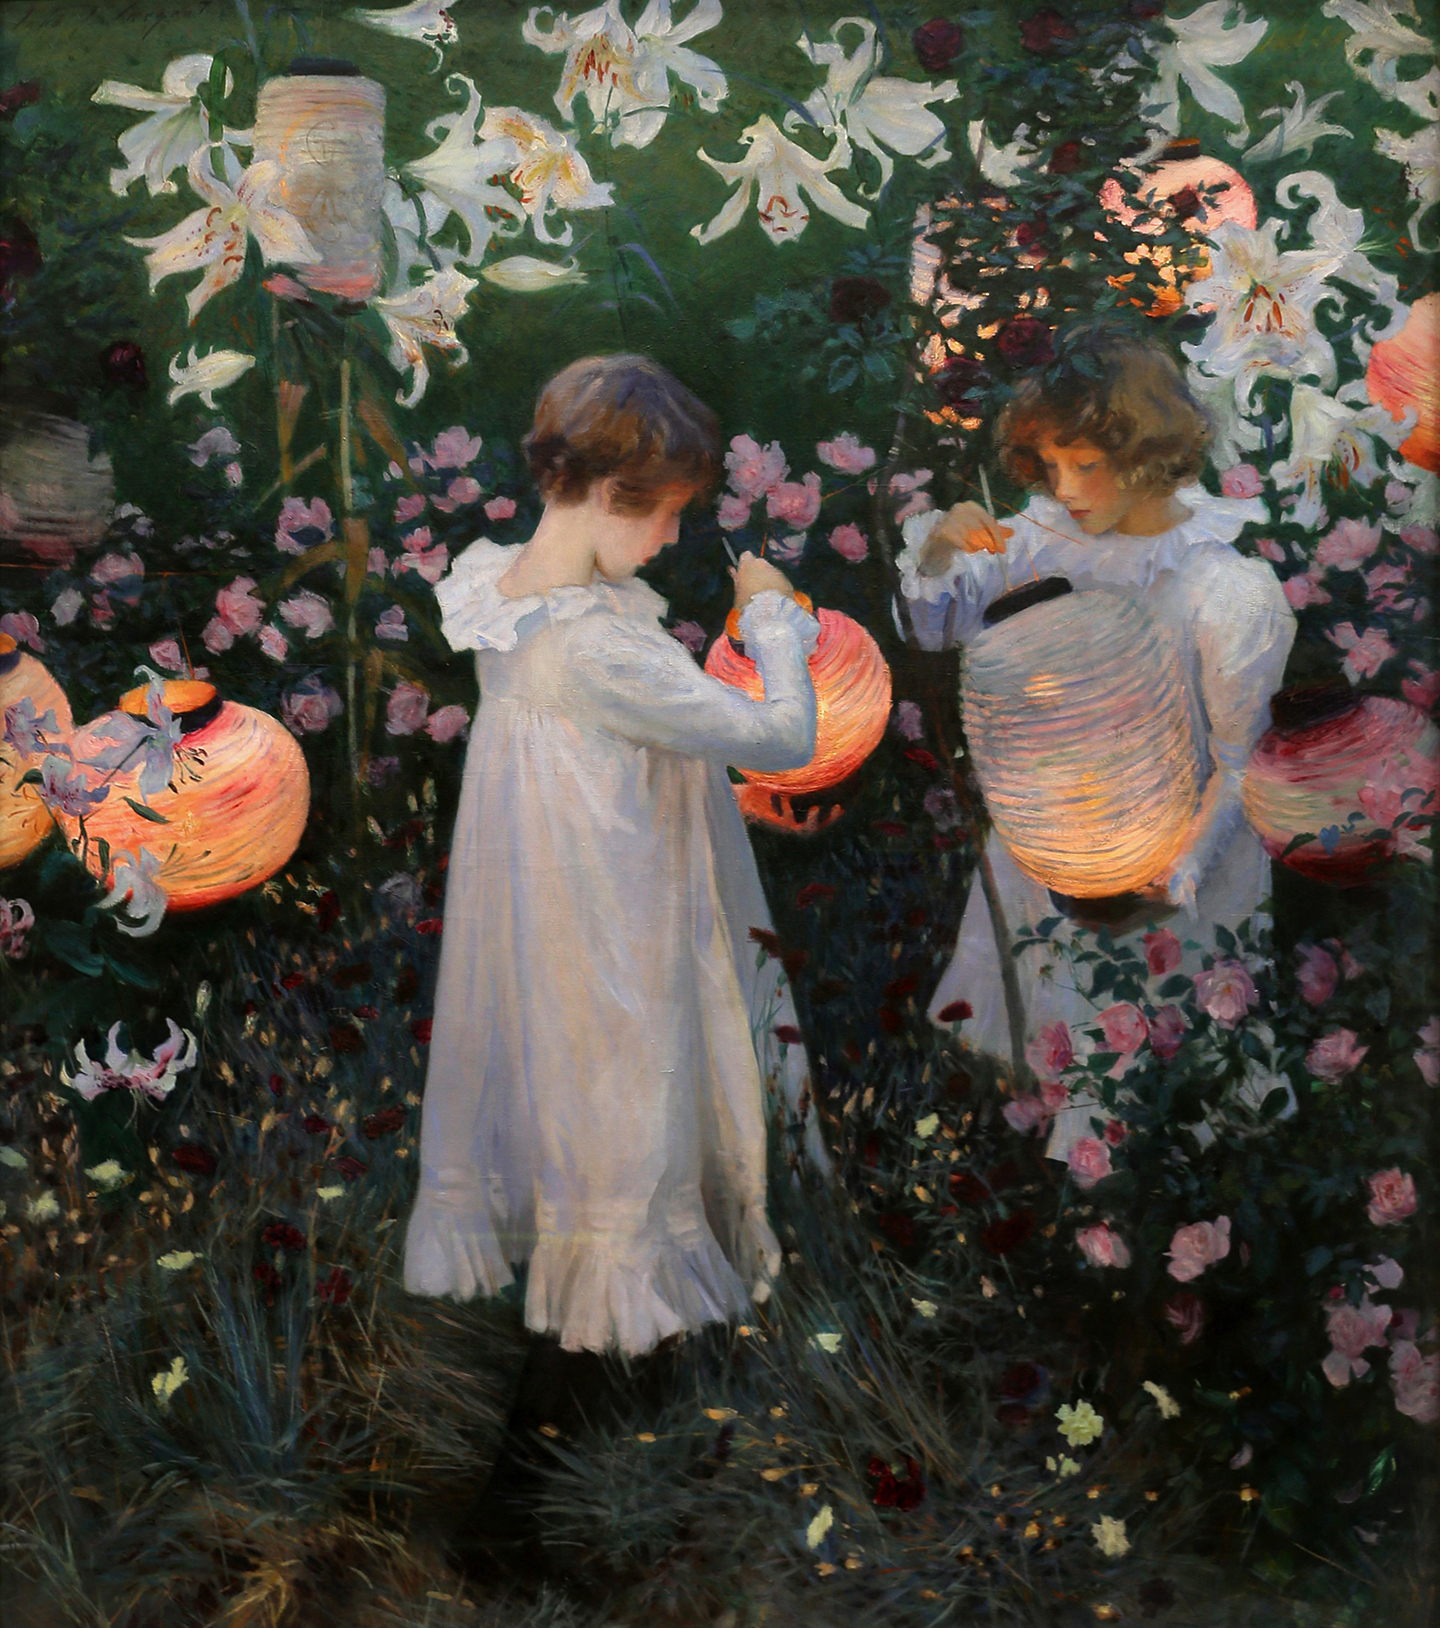 “Carnation, Lily, Lily, Rose” (Cẩm Chướng, Huệ Tây, Huệ Tây, Hoa Hồng), từ năm 1885 đến năm 1886, của họa sỹ John Singer Sargent. Sơn dầu trên vải canvas; 154 cm x 174 cm. Bảo tàng Tate Britain, London. (Ảnh: Sailko/CC BY 4.0 Deed)